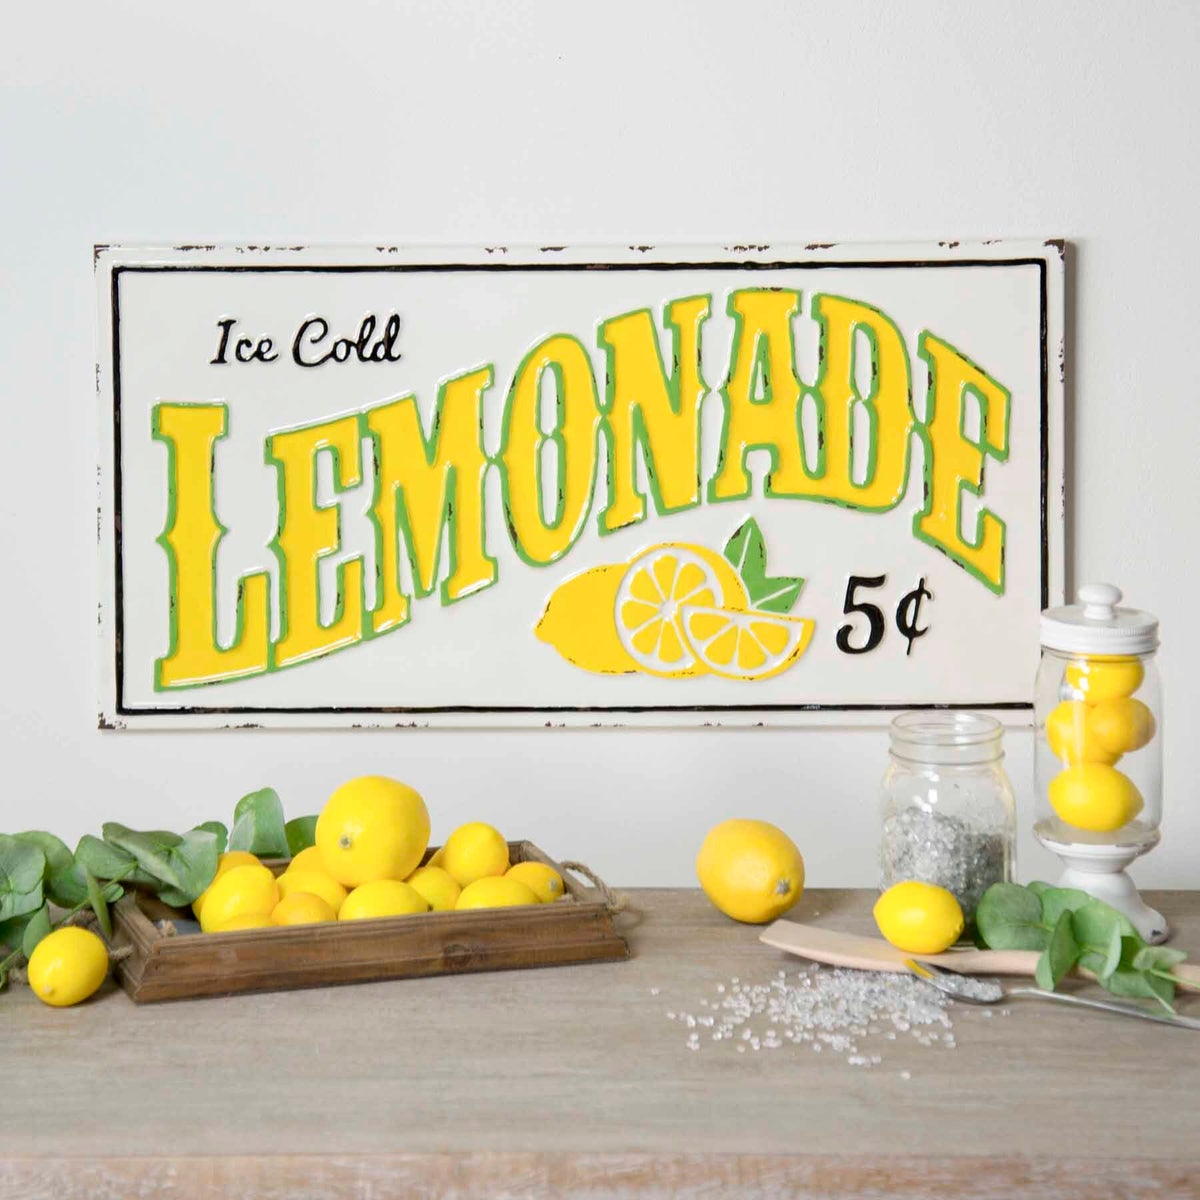 Mtl Sign Lemonade 5 Cents